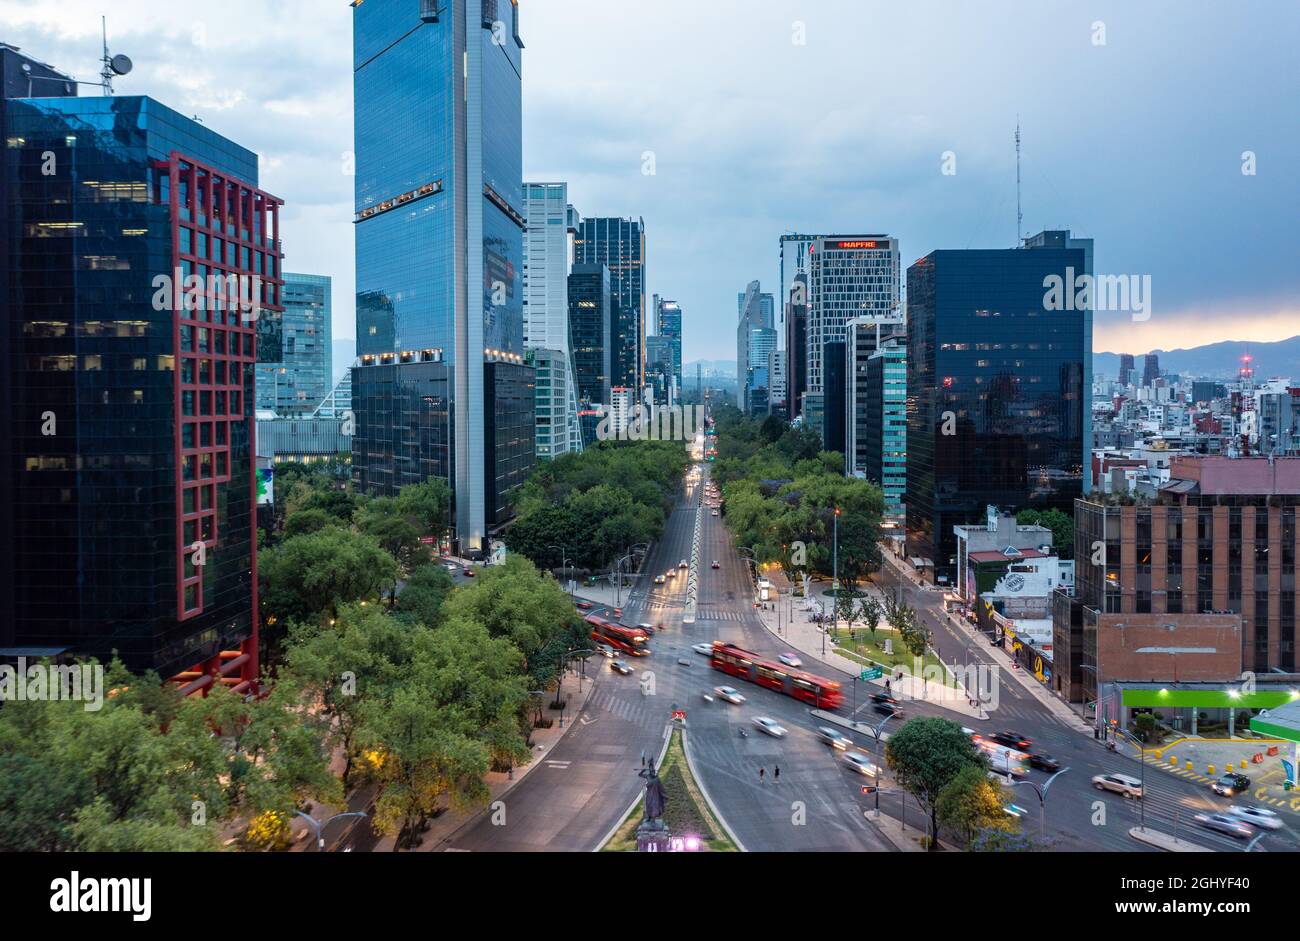 Luftaufnahme der Finanzhochhäuser mit fahrenden Bussen und Autos auf der Straße tagsüber in Mexiko-Stadt unter wolkenfreiem Himmel Stockfoto